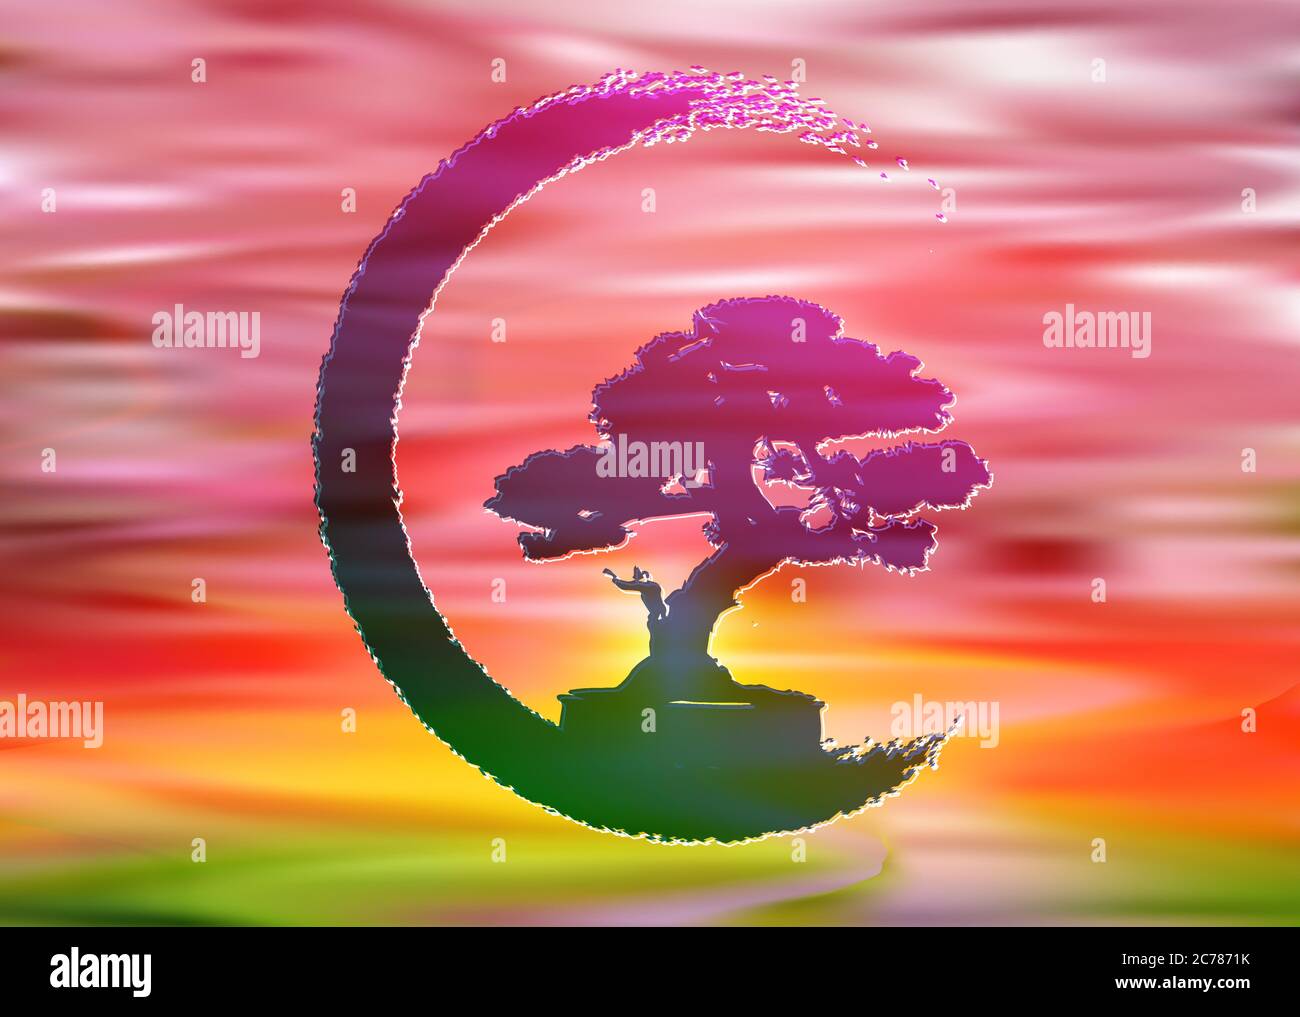 Logo de bonsaï japonais, icônes de silhouette de plante, silhouette d'arbre de vie de fond rouge de ciel de coucher de soleil. Image détaillée. Bio nature coloré concept Illustration de Vecteur